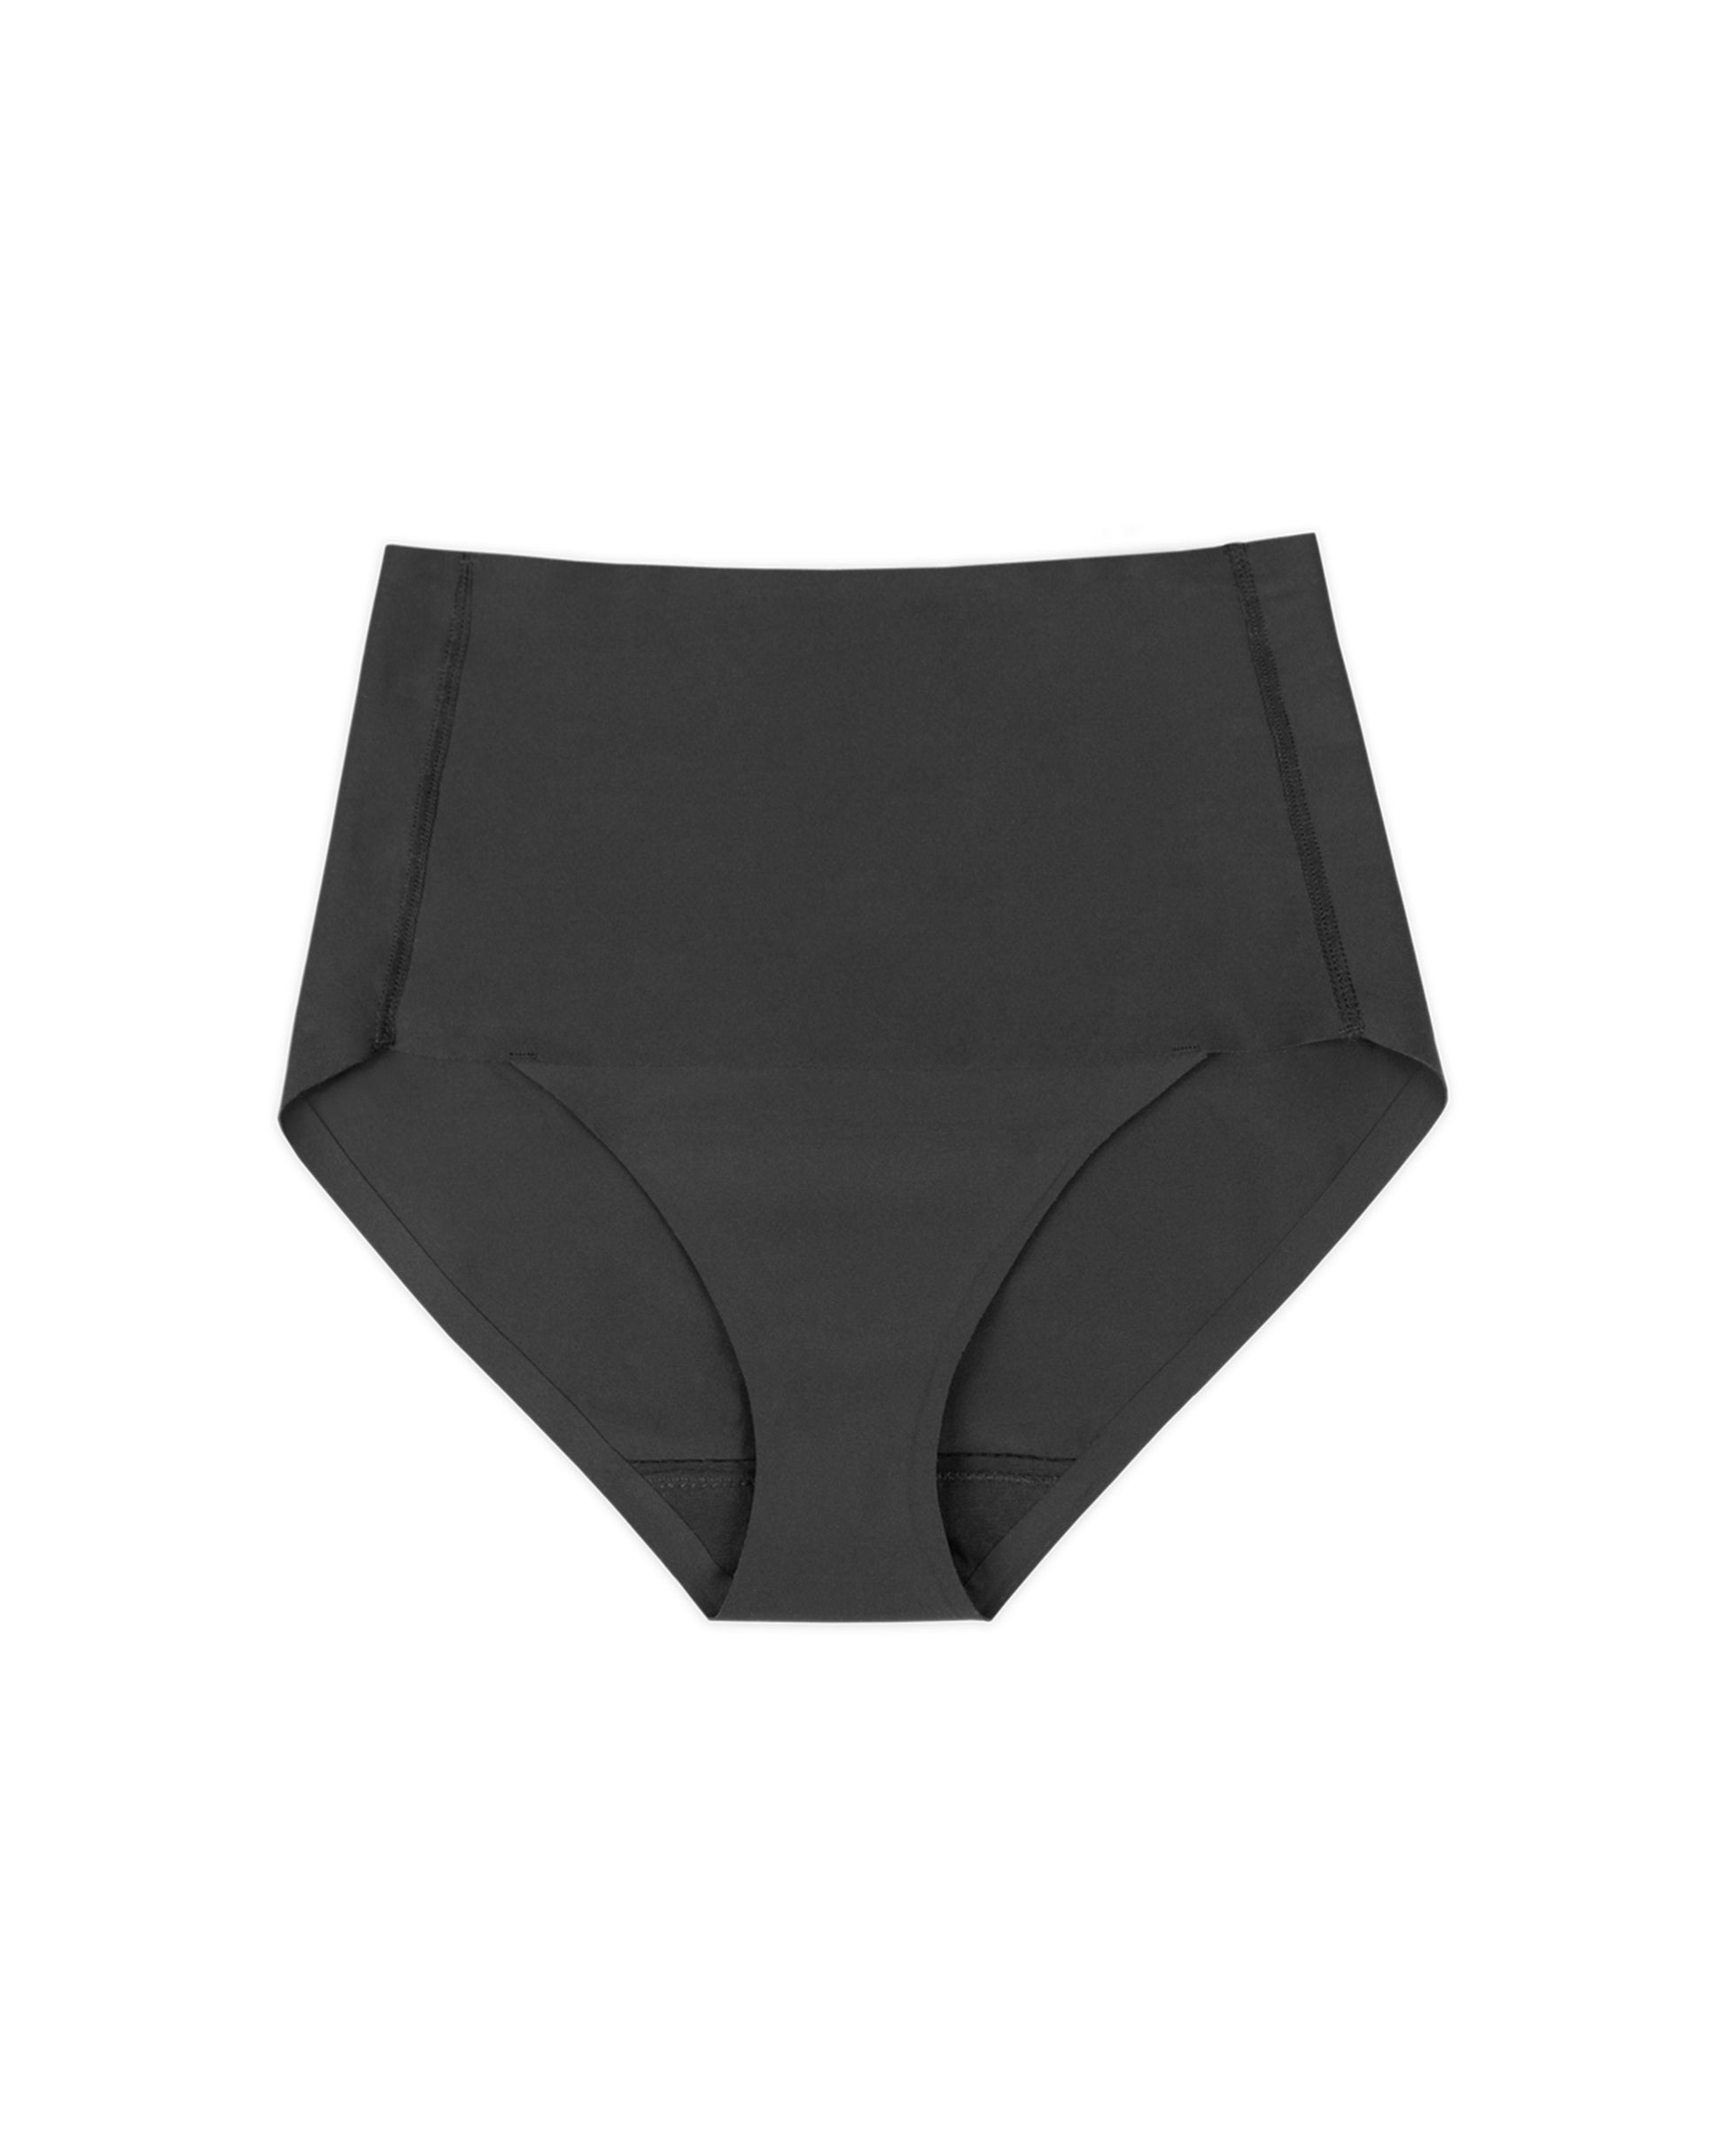 ZMHEGW Underwear Women Tummy Control Shapewear Shorts Lifting Shorts Waist  Compression Period Panties 